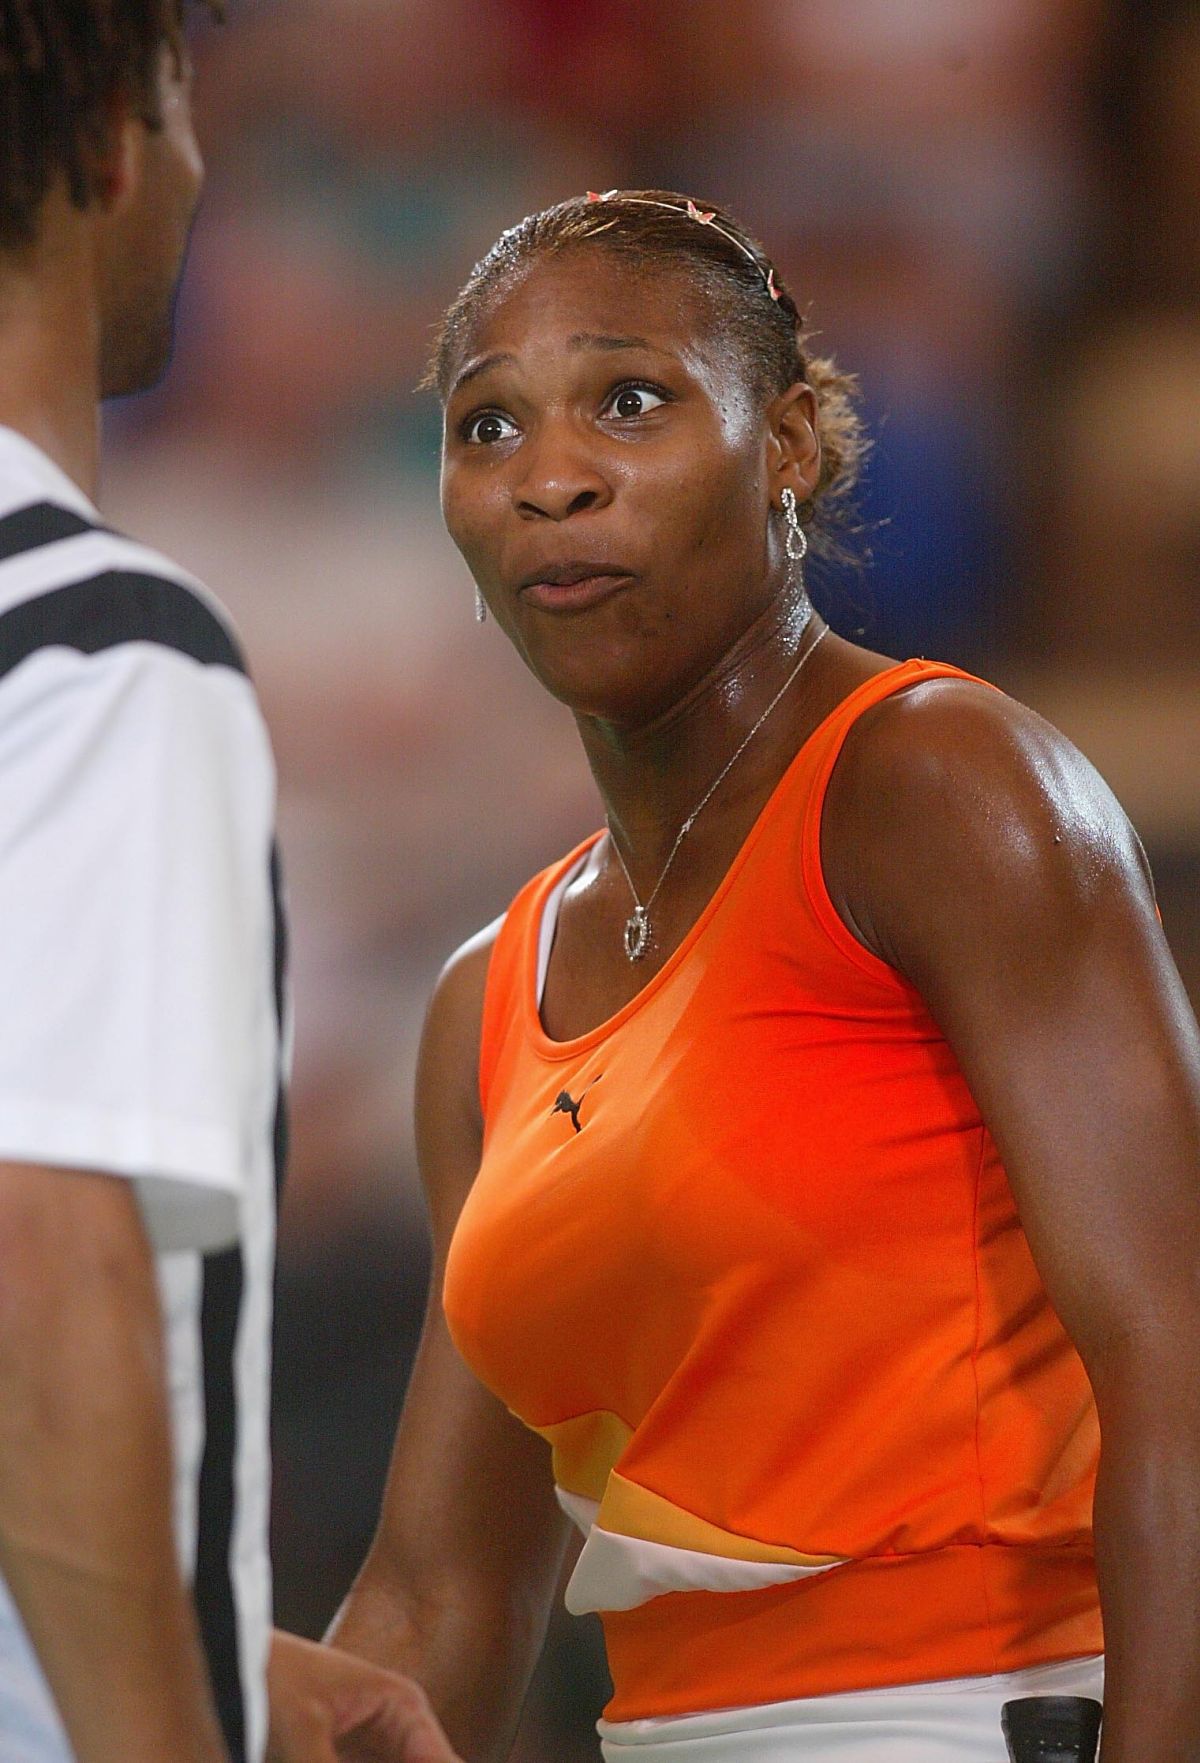 Poza cu care și-a copleșit fanii: „Vă place noua Serena?” » Reacția soțului: „Recomand cu încredere!” 